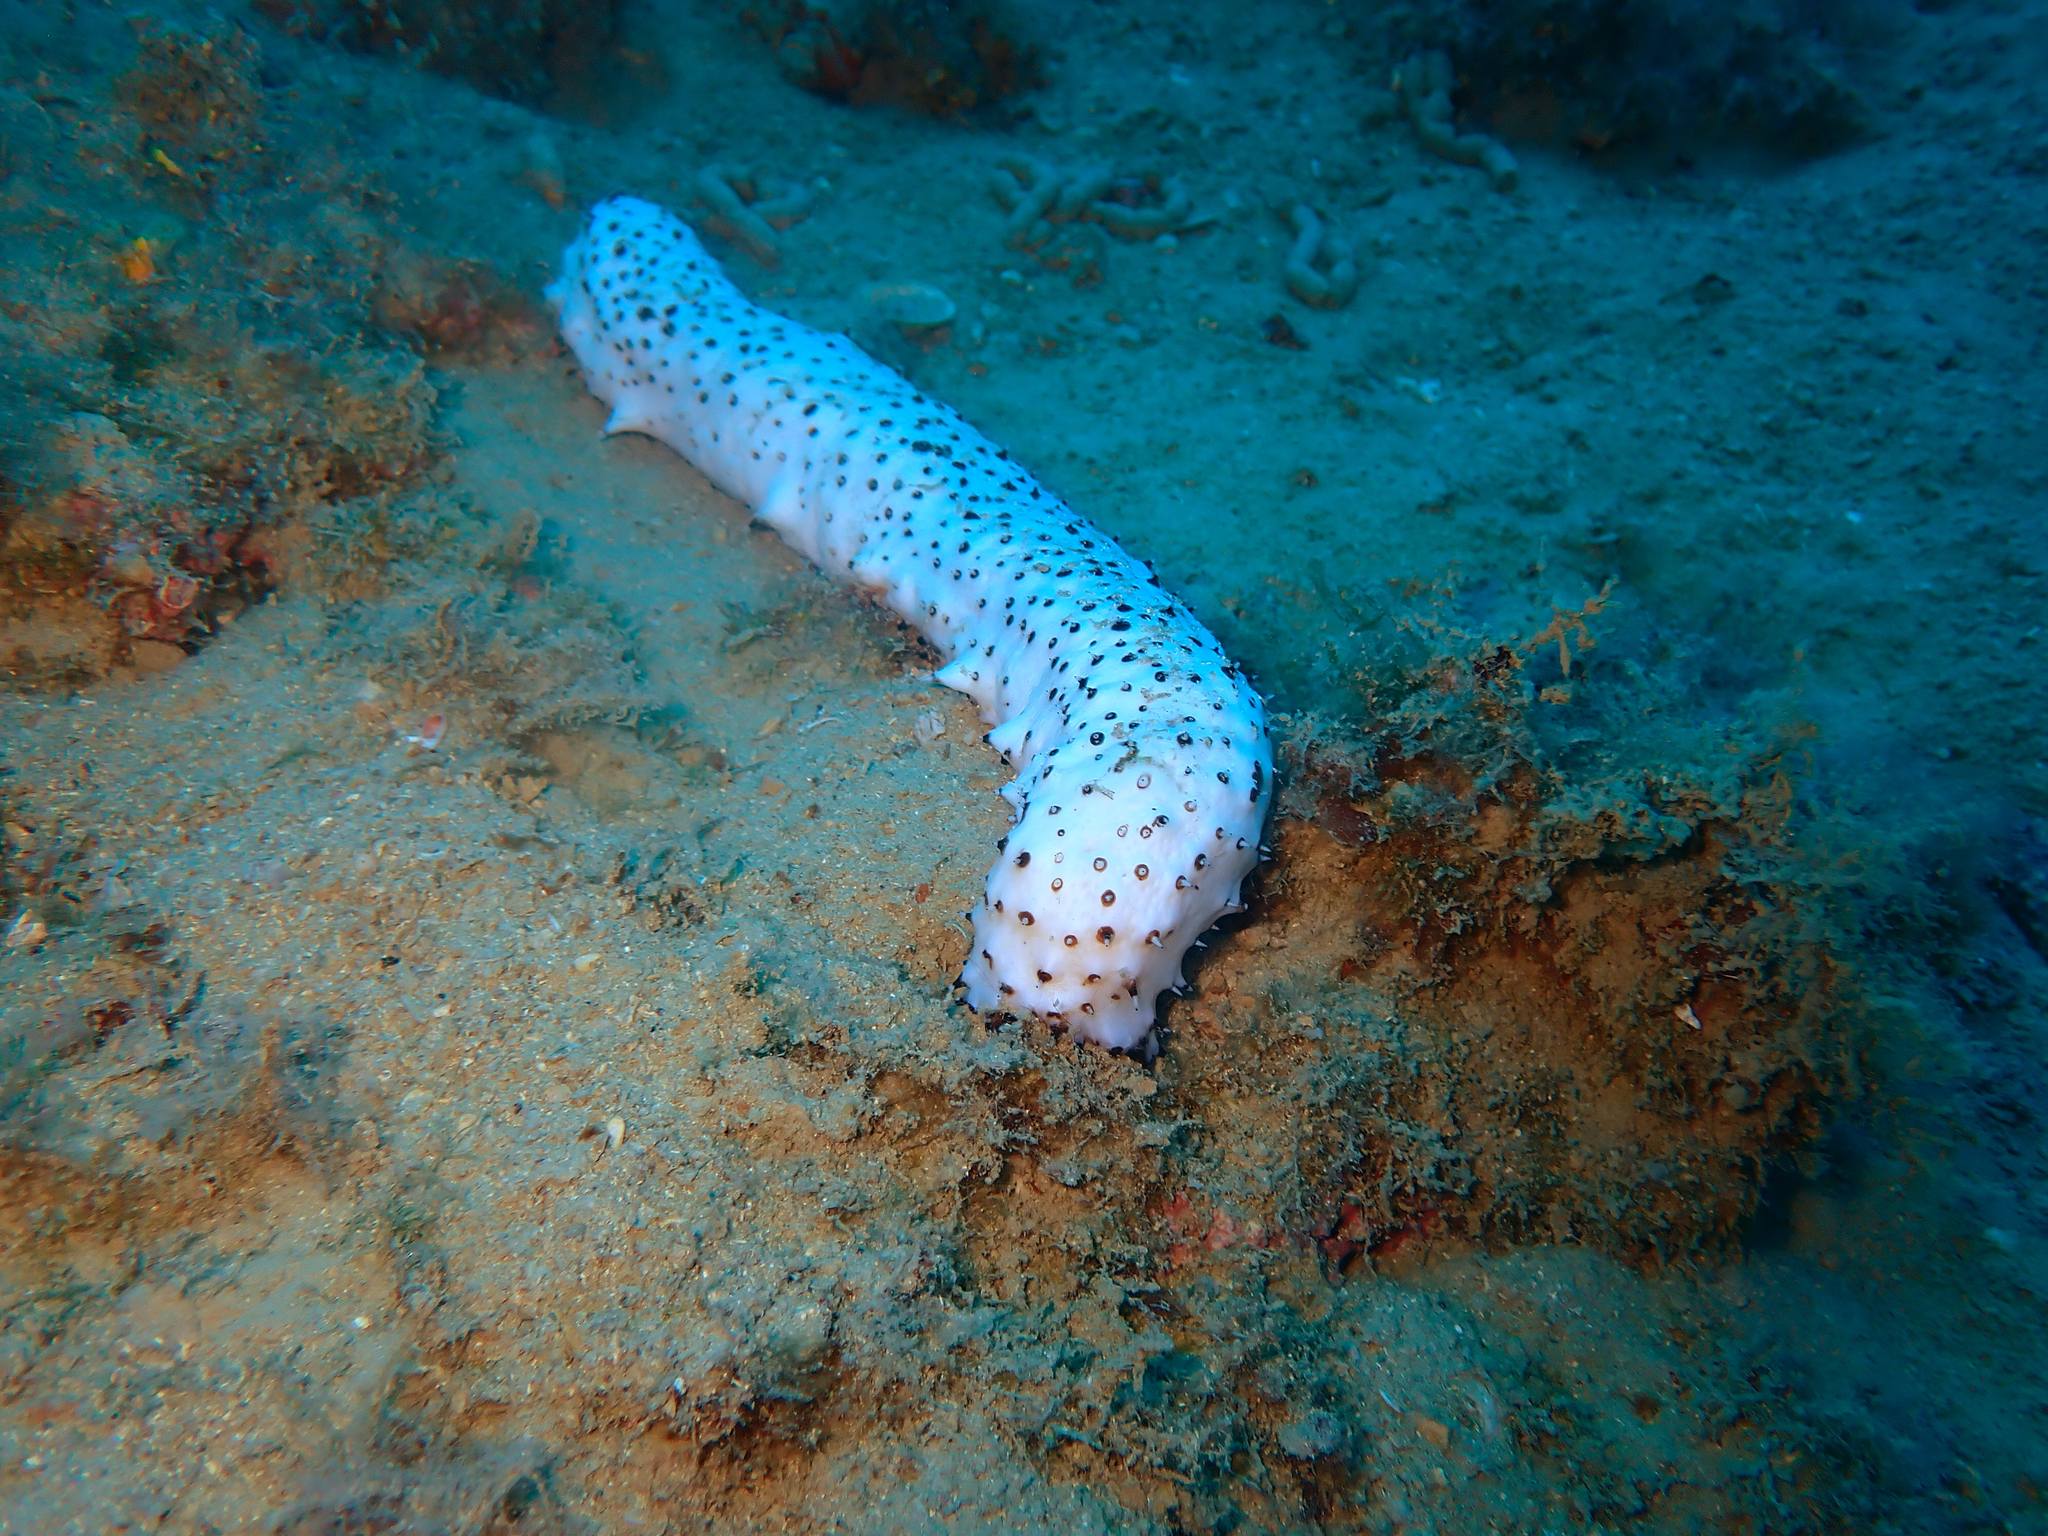 Albino sea cucumber in Croatian Adriatic sea